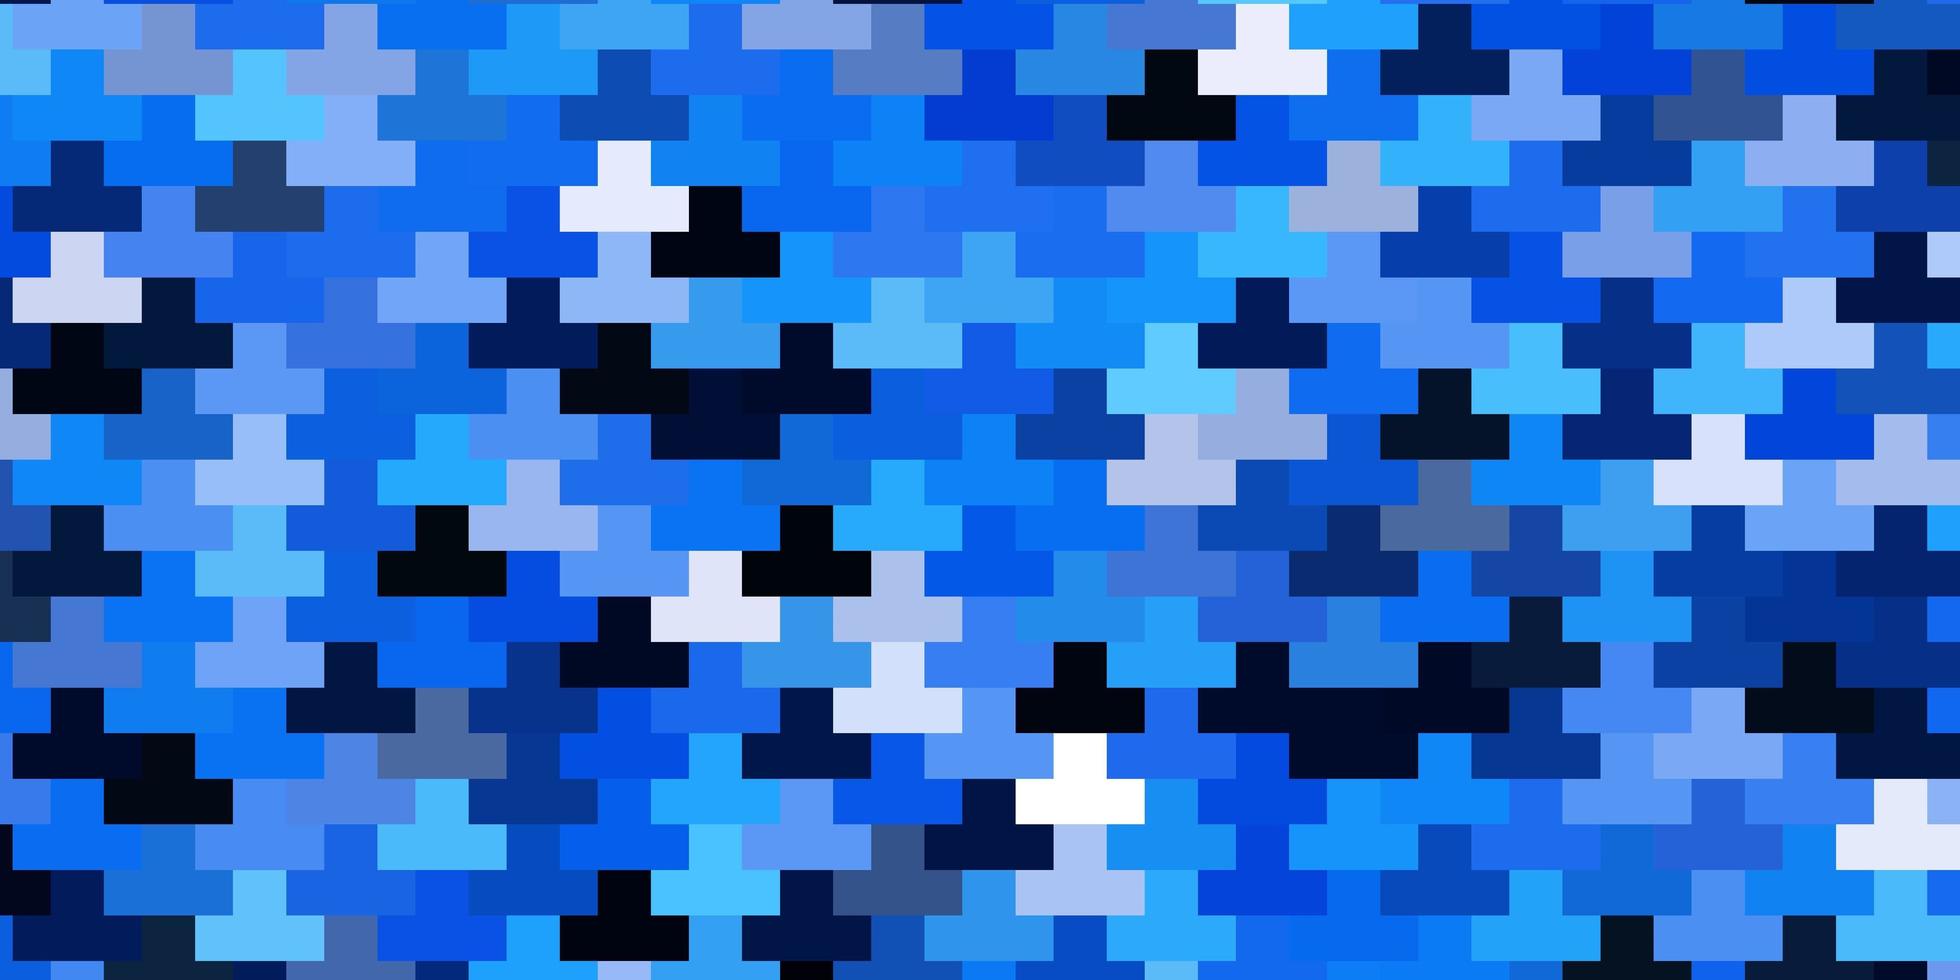 layout de vetor azul escuro com retângulos de linhas